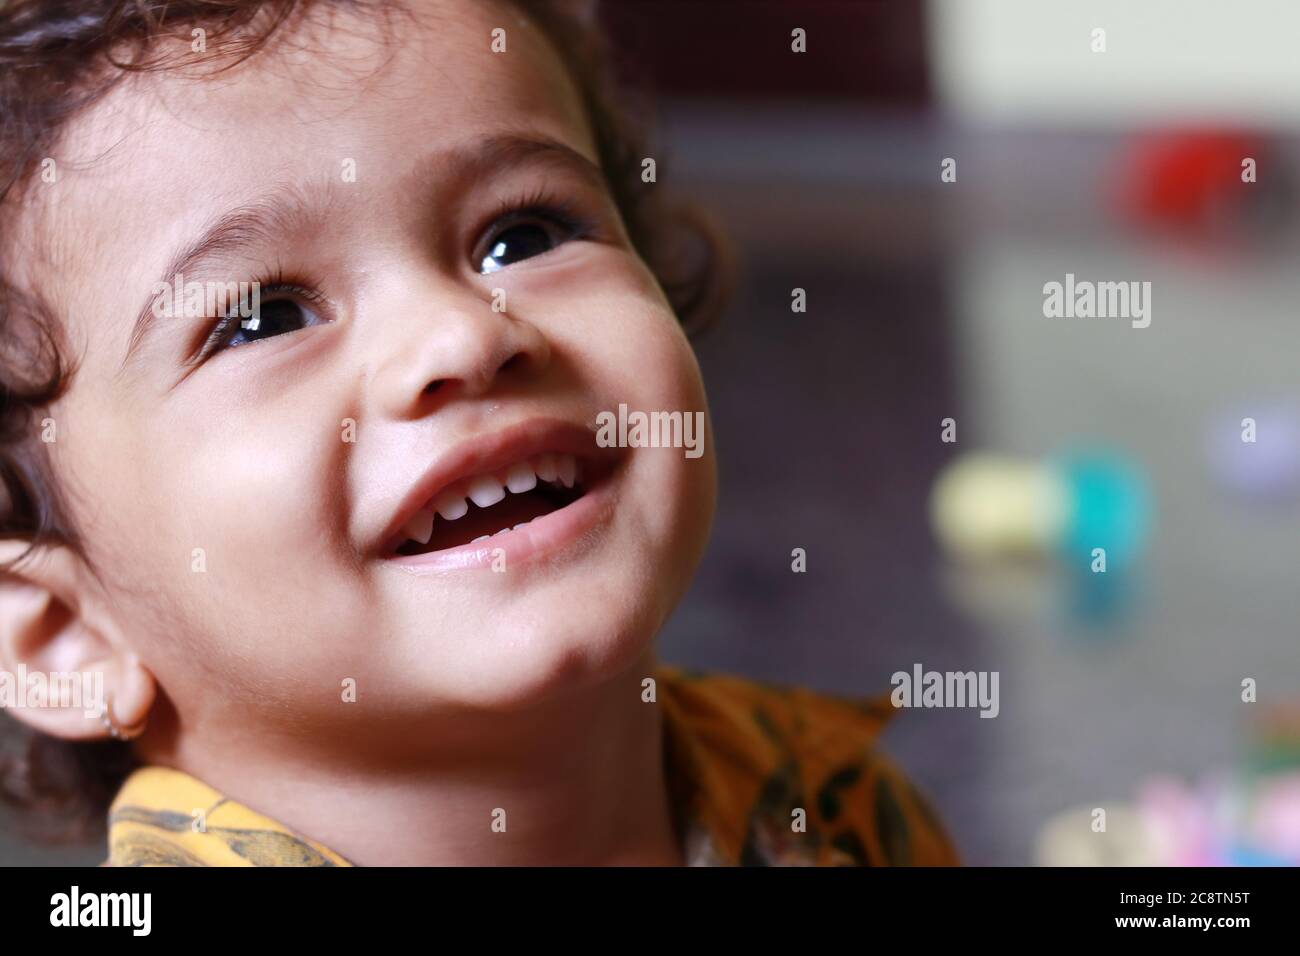 Ein Nahaufnahme Bild eines Kindes, in dem das Kind lachend gesehen wird Stockfoto